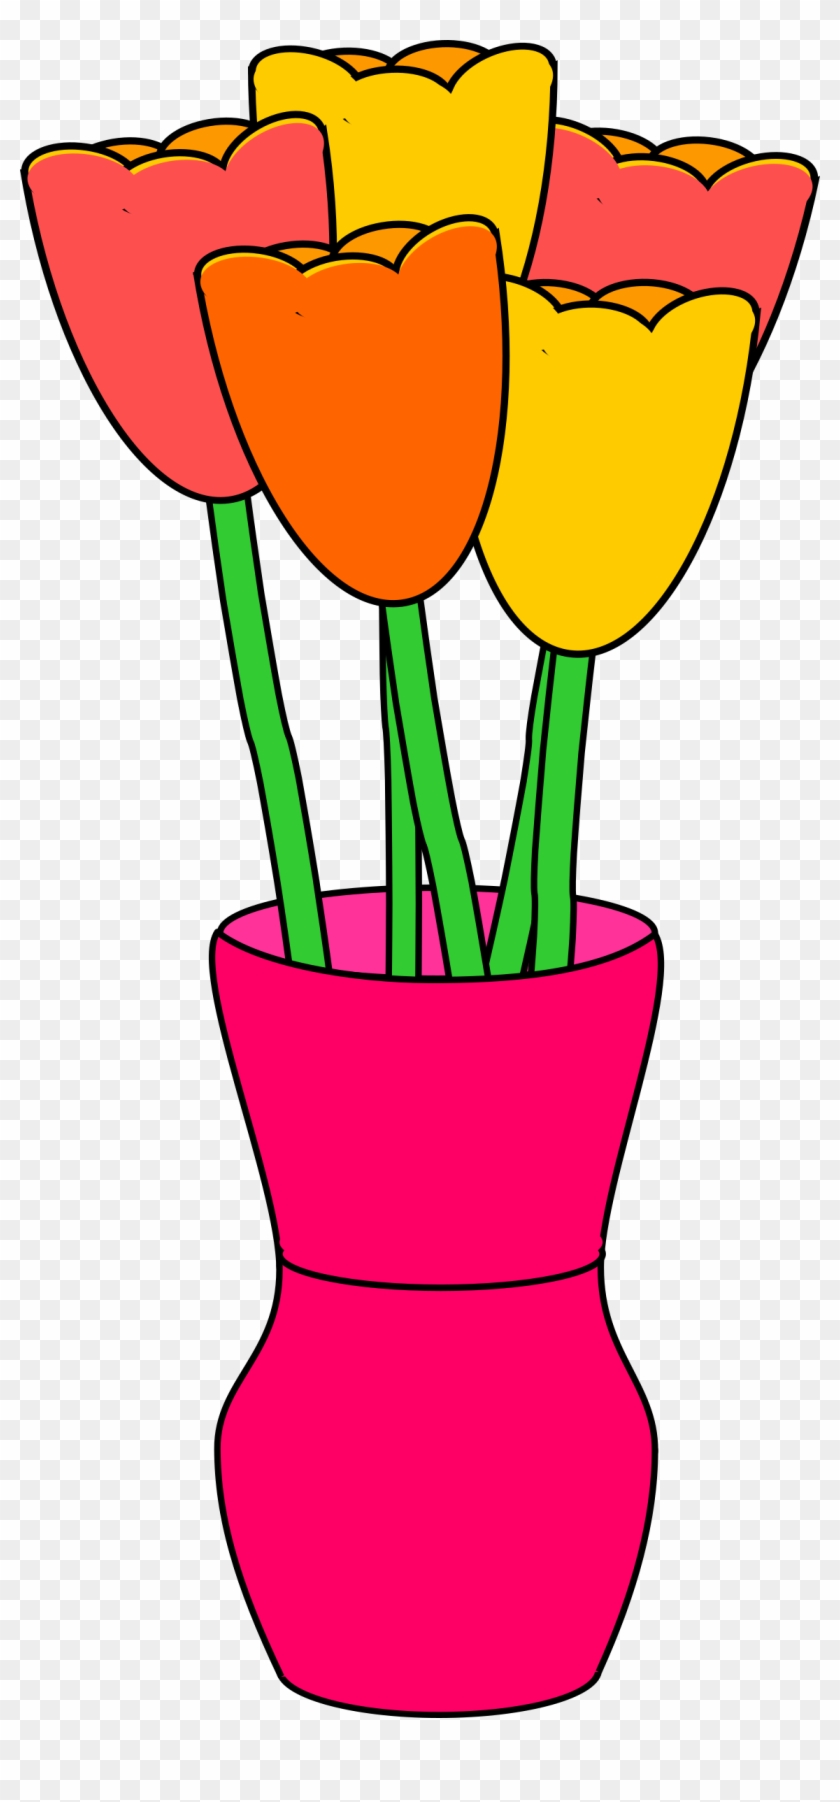 Vase Of Multicolored Tulips - Tulip In Vase Clipart #354259